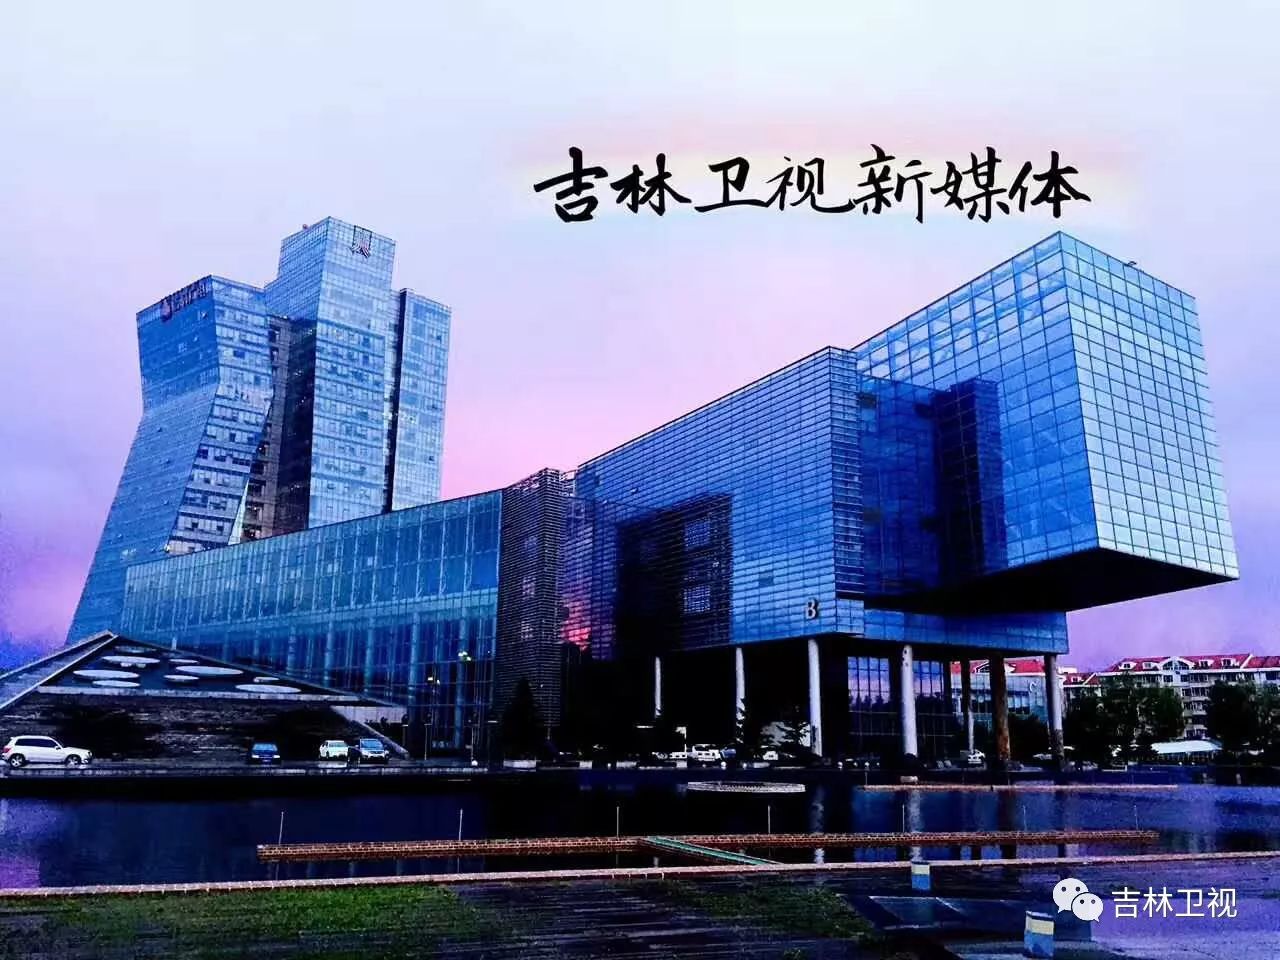 长春广播电视台大楼图片